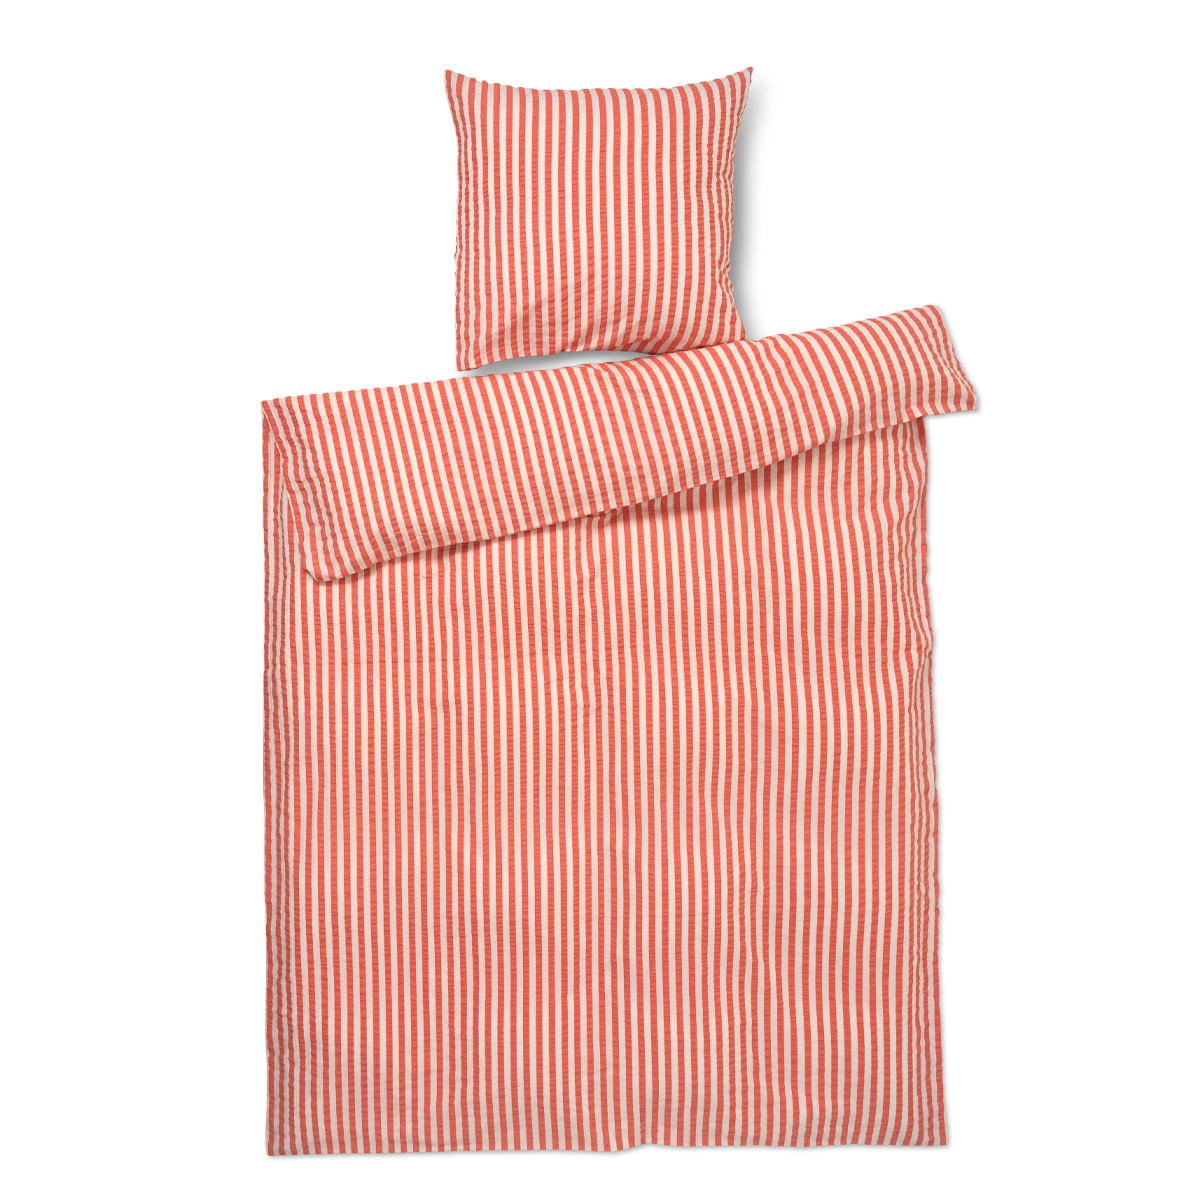 Juna - Organic Bed linen - Crisp Lines - 140 x 220 cm - Chili